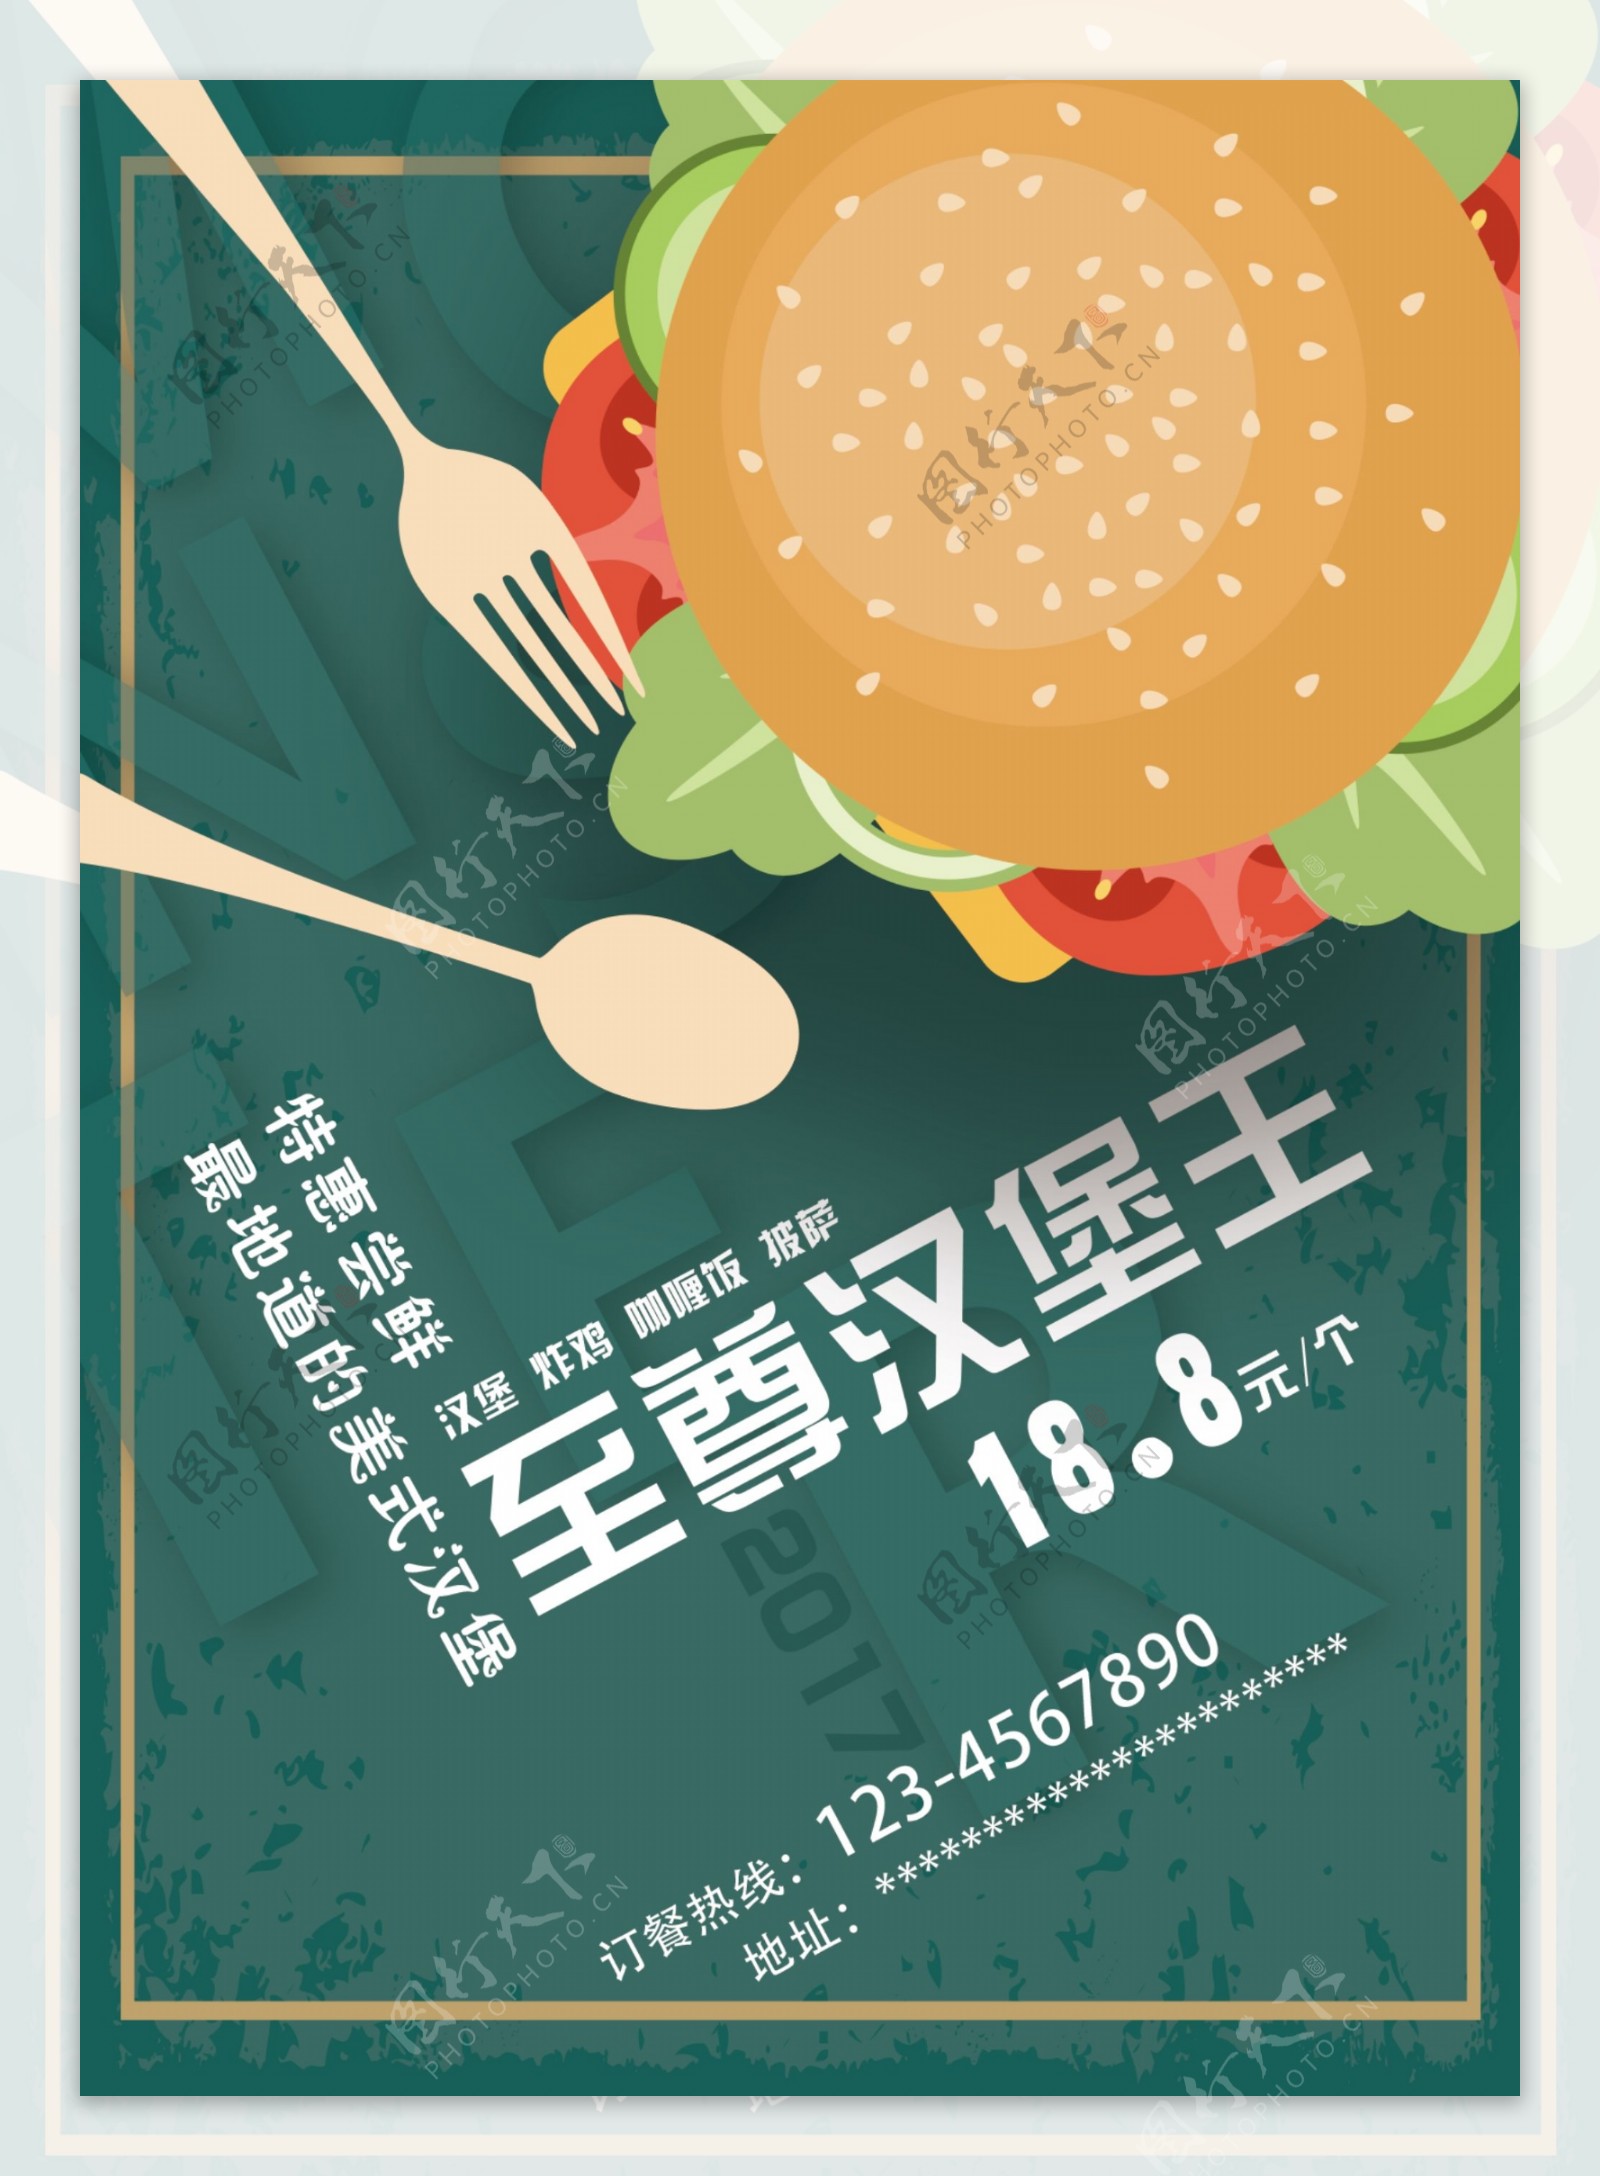 墨绿色汉堡海报快餐促销海报psd模板